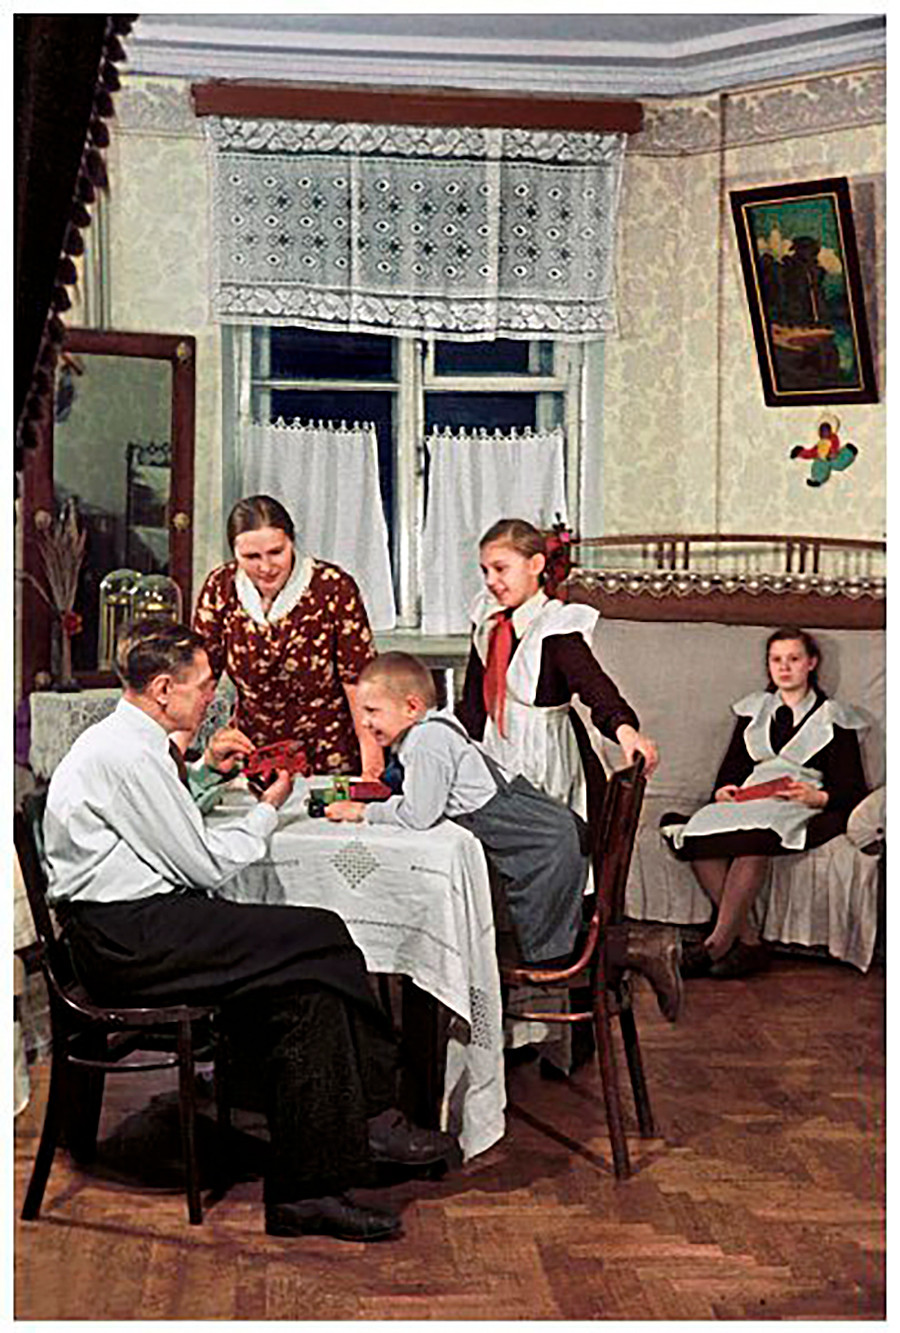 「ボリシェヴィチカ」工場のパン職人S・I・メリニコフとその家族。工場から提供された新居にて。1950年